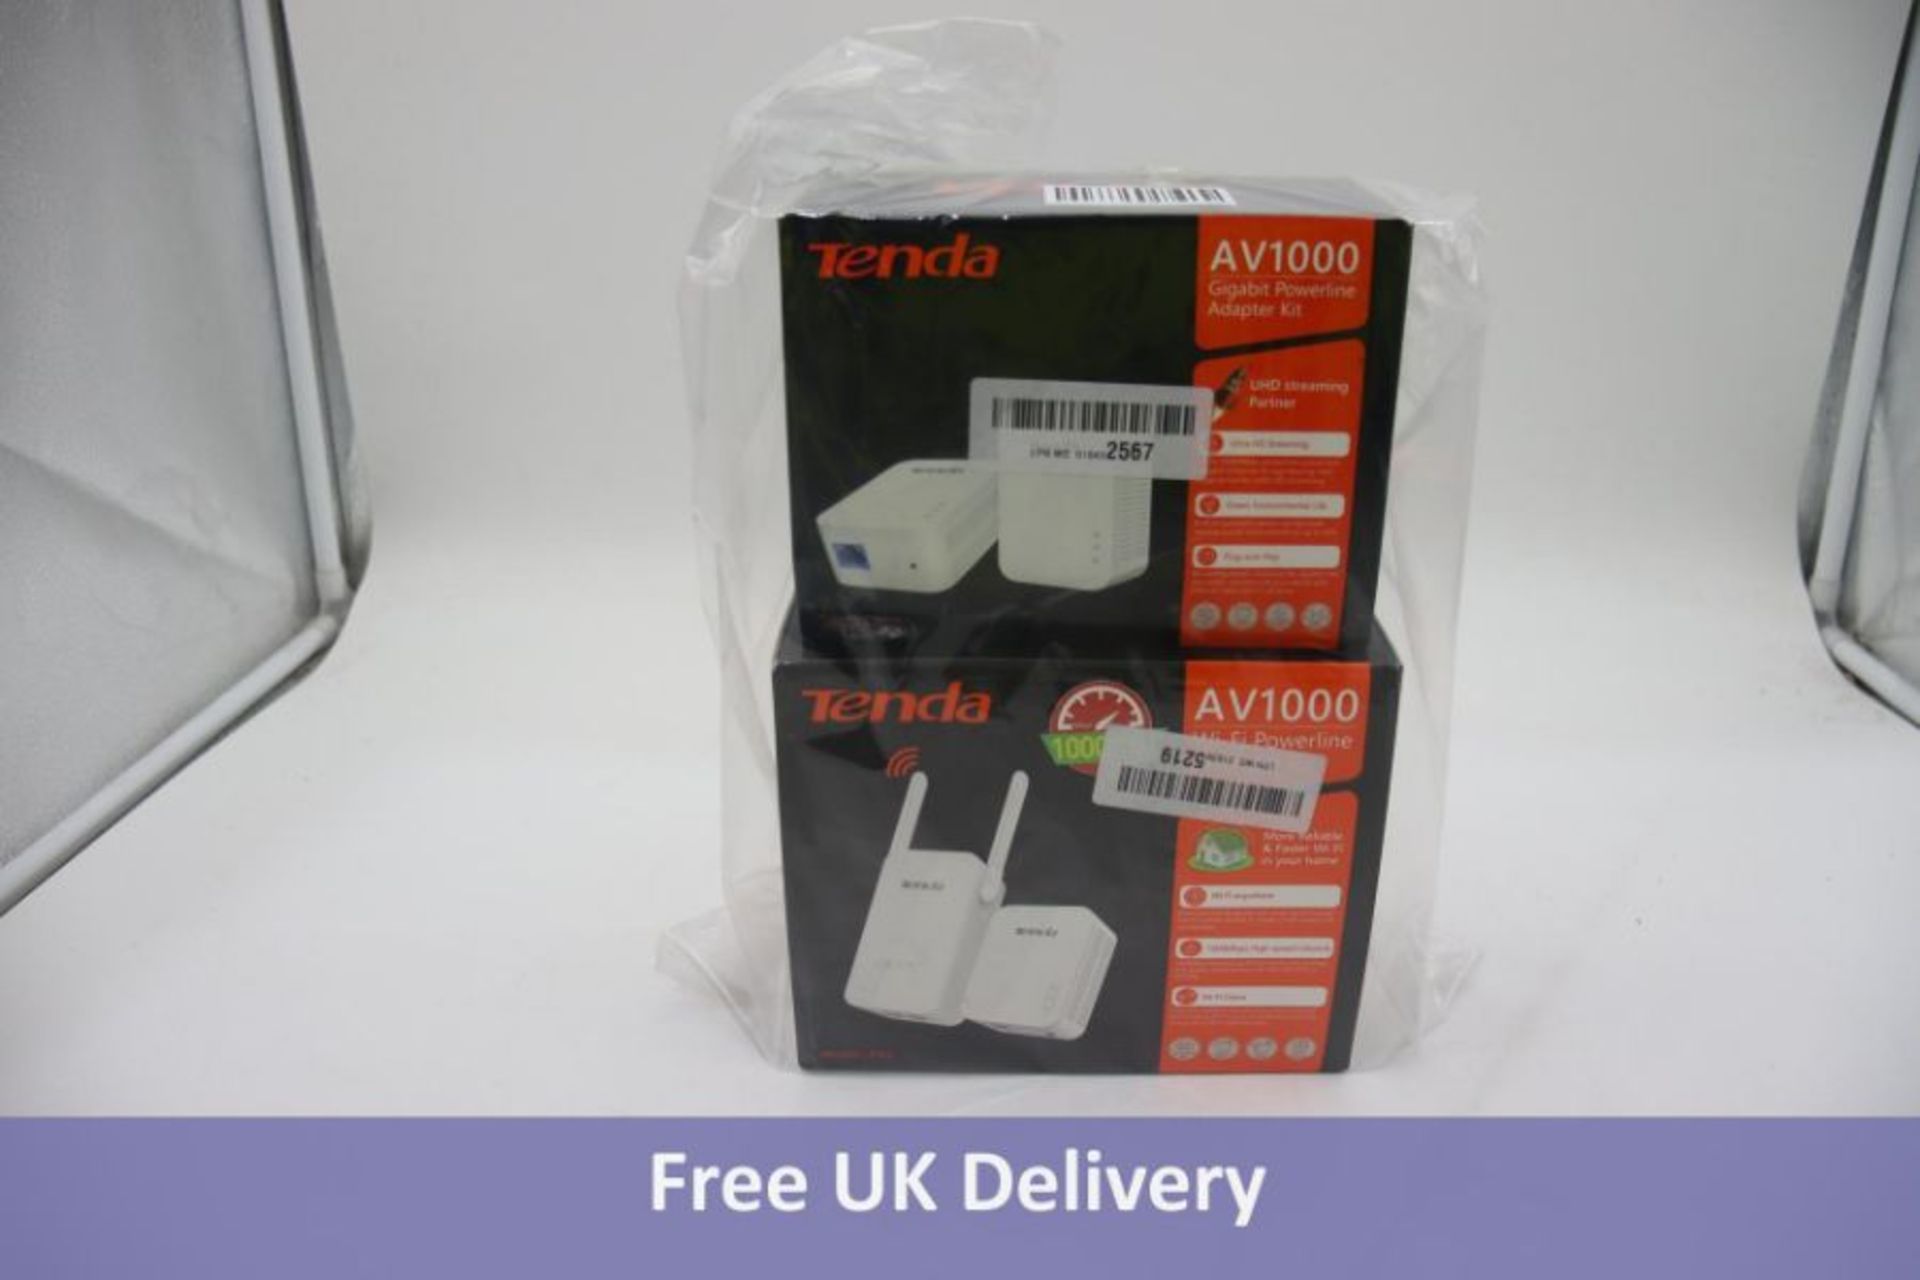 Two Tenda Wifi items to include 1x Tenda AV1000 Wi-Fi Powerline Extender Kit and 1x Tenda AV1000 Gig